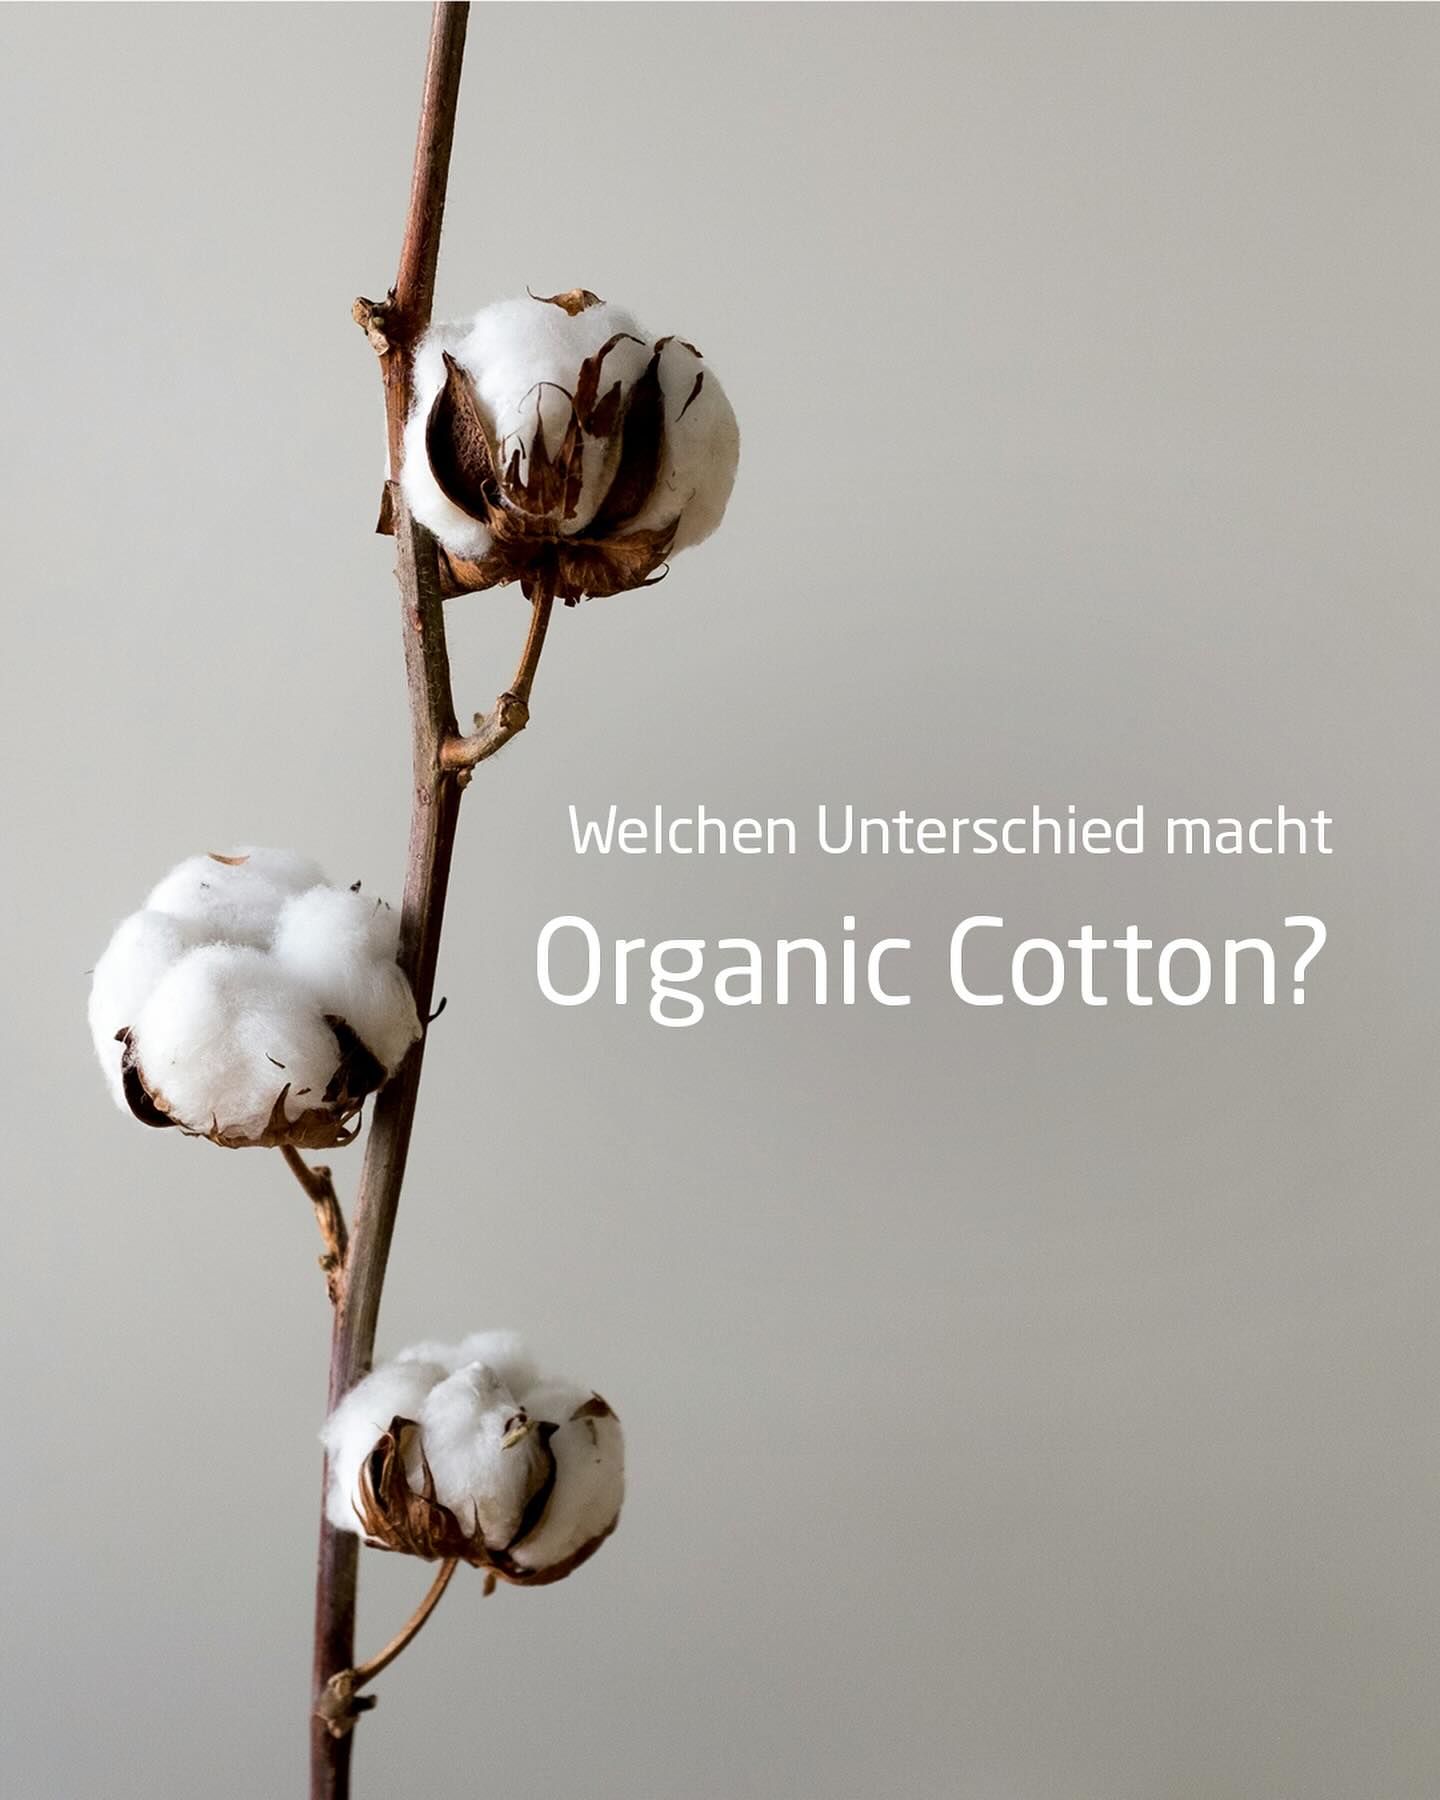 Organic Cotton macht den Unterschied! 
Entscheide dich für Nachhaltigkeit und Tragekomfort mit Organic Cotton! 

#JOY_sportswear #sportswear #organiccotton #baumwolle